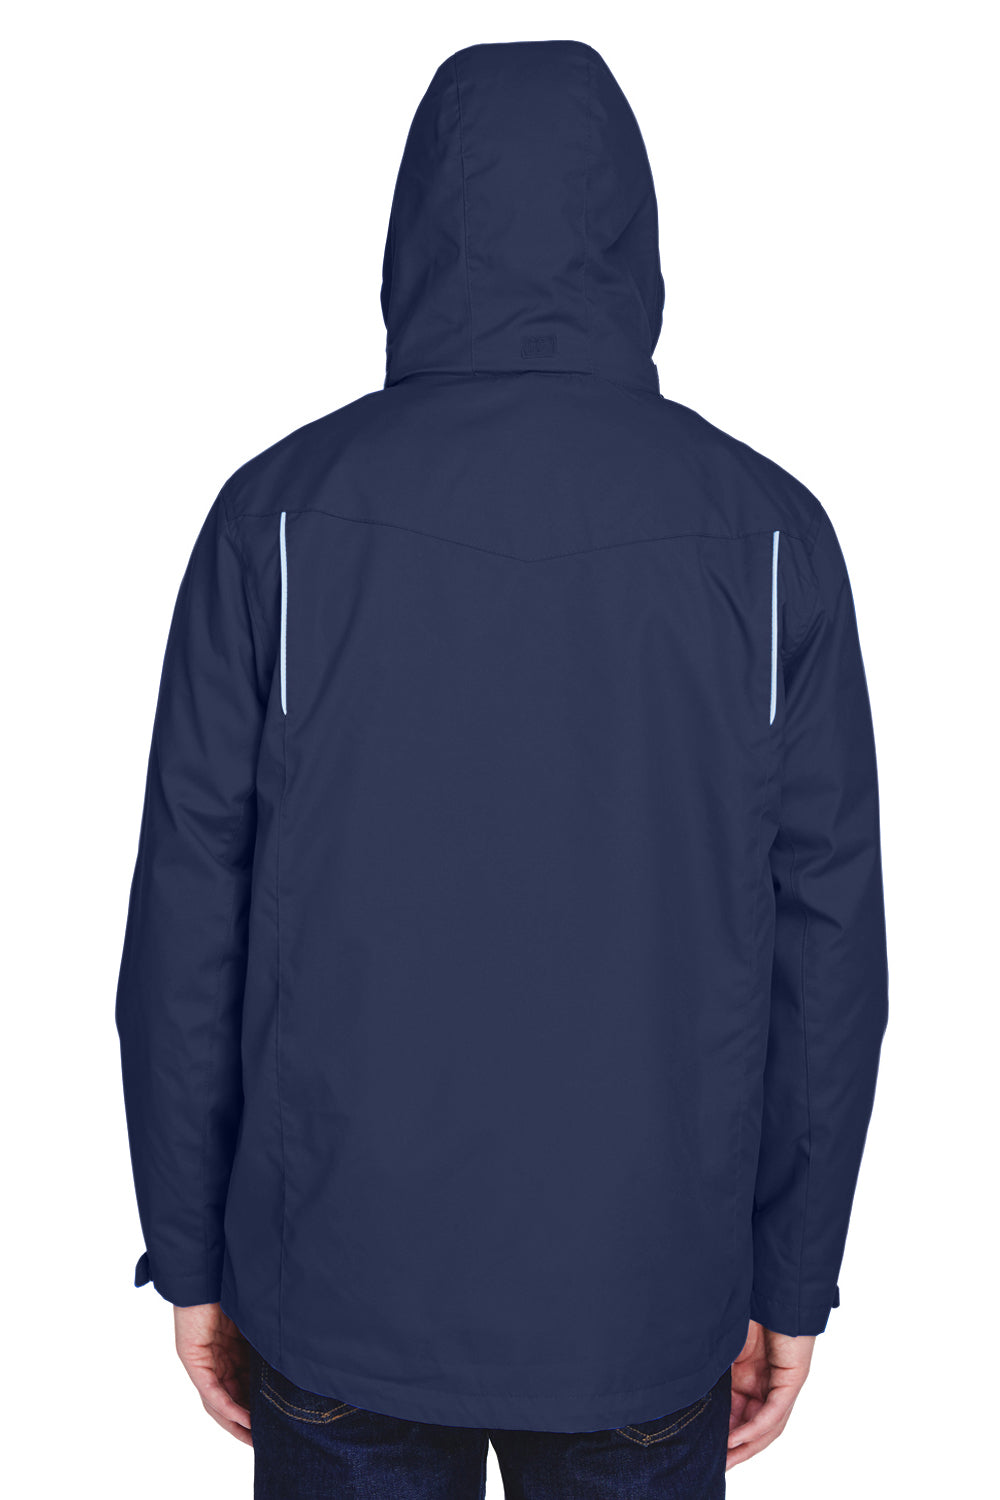 Core 365 88205 Mens Region 3-in-1 Water Resistant Full Zip Hooded Jacket Navy Blue Back